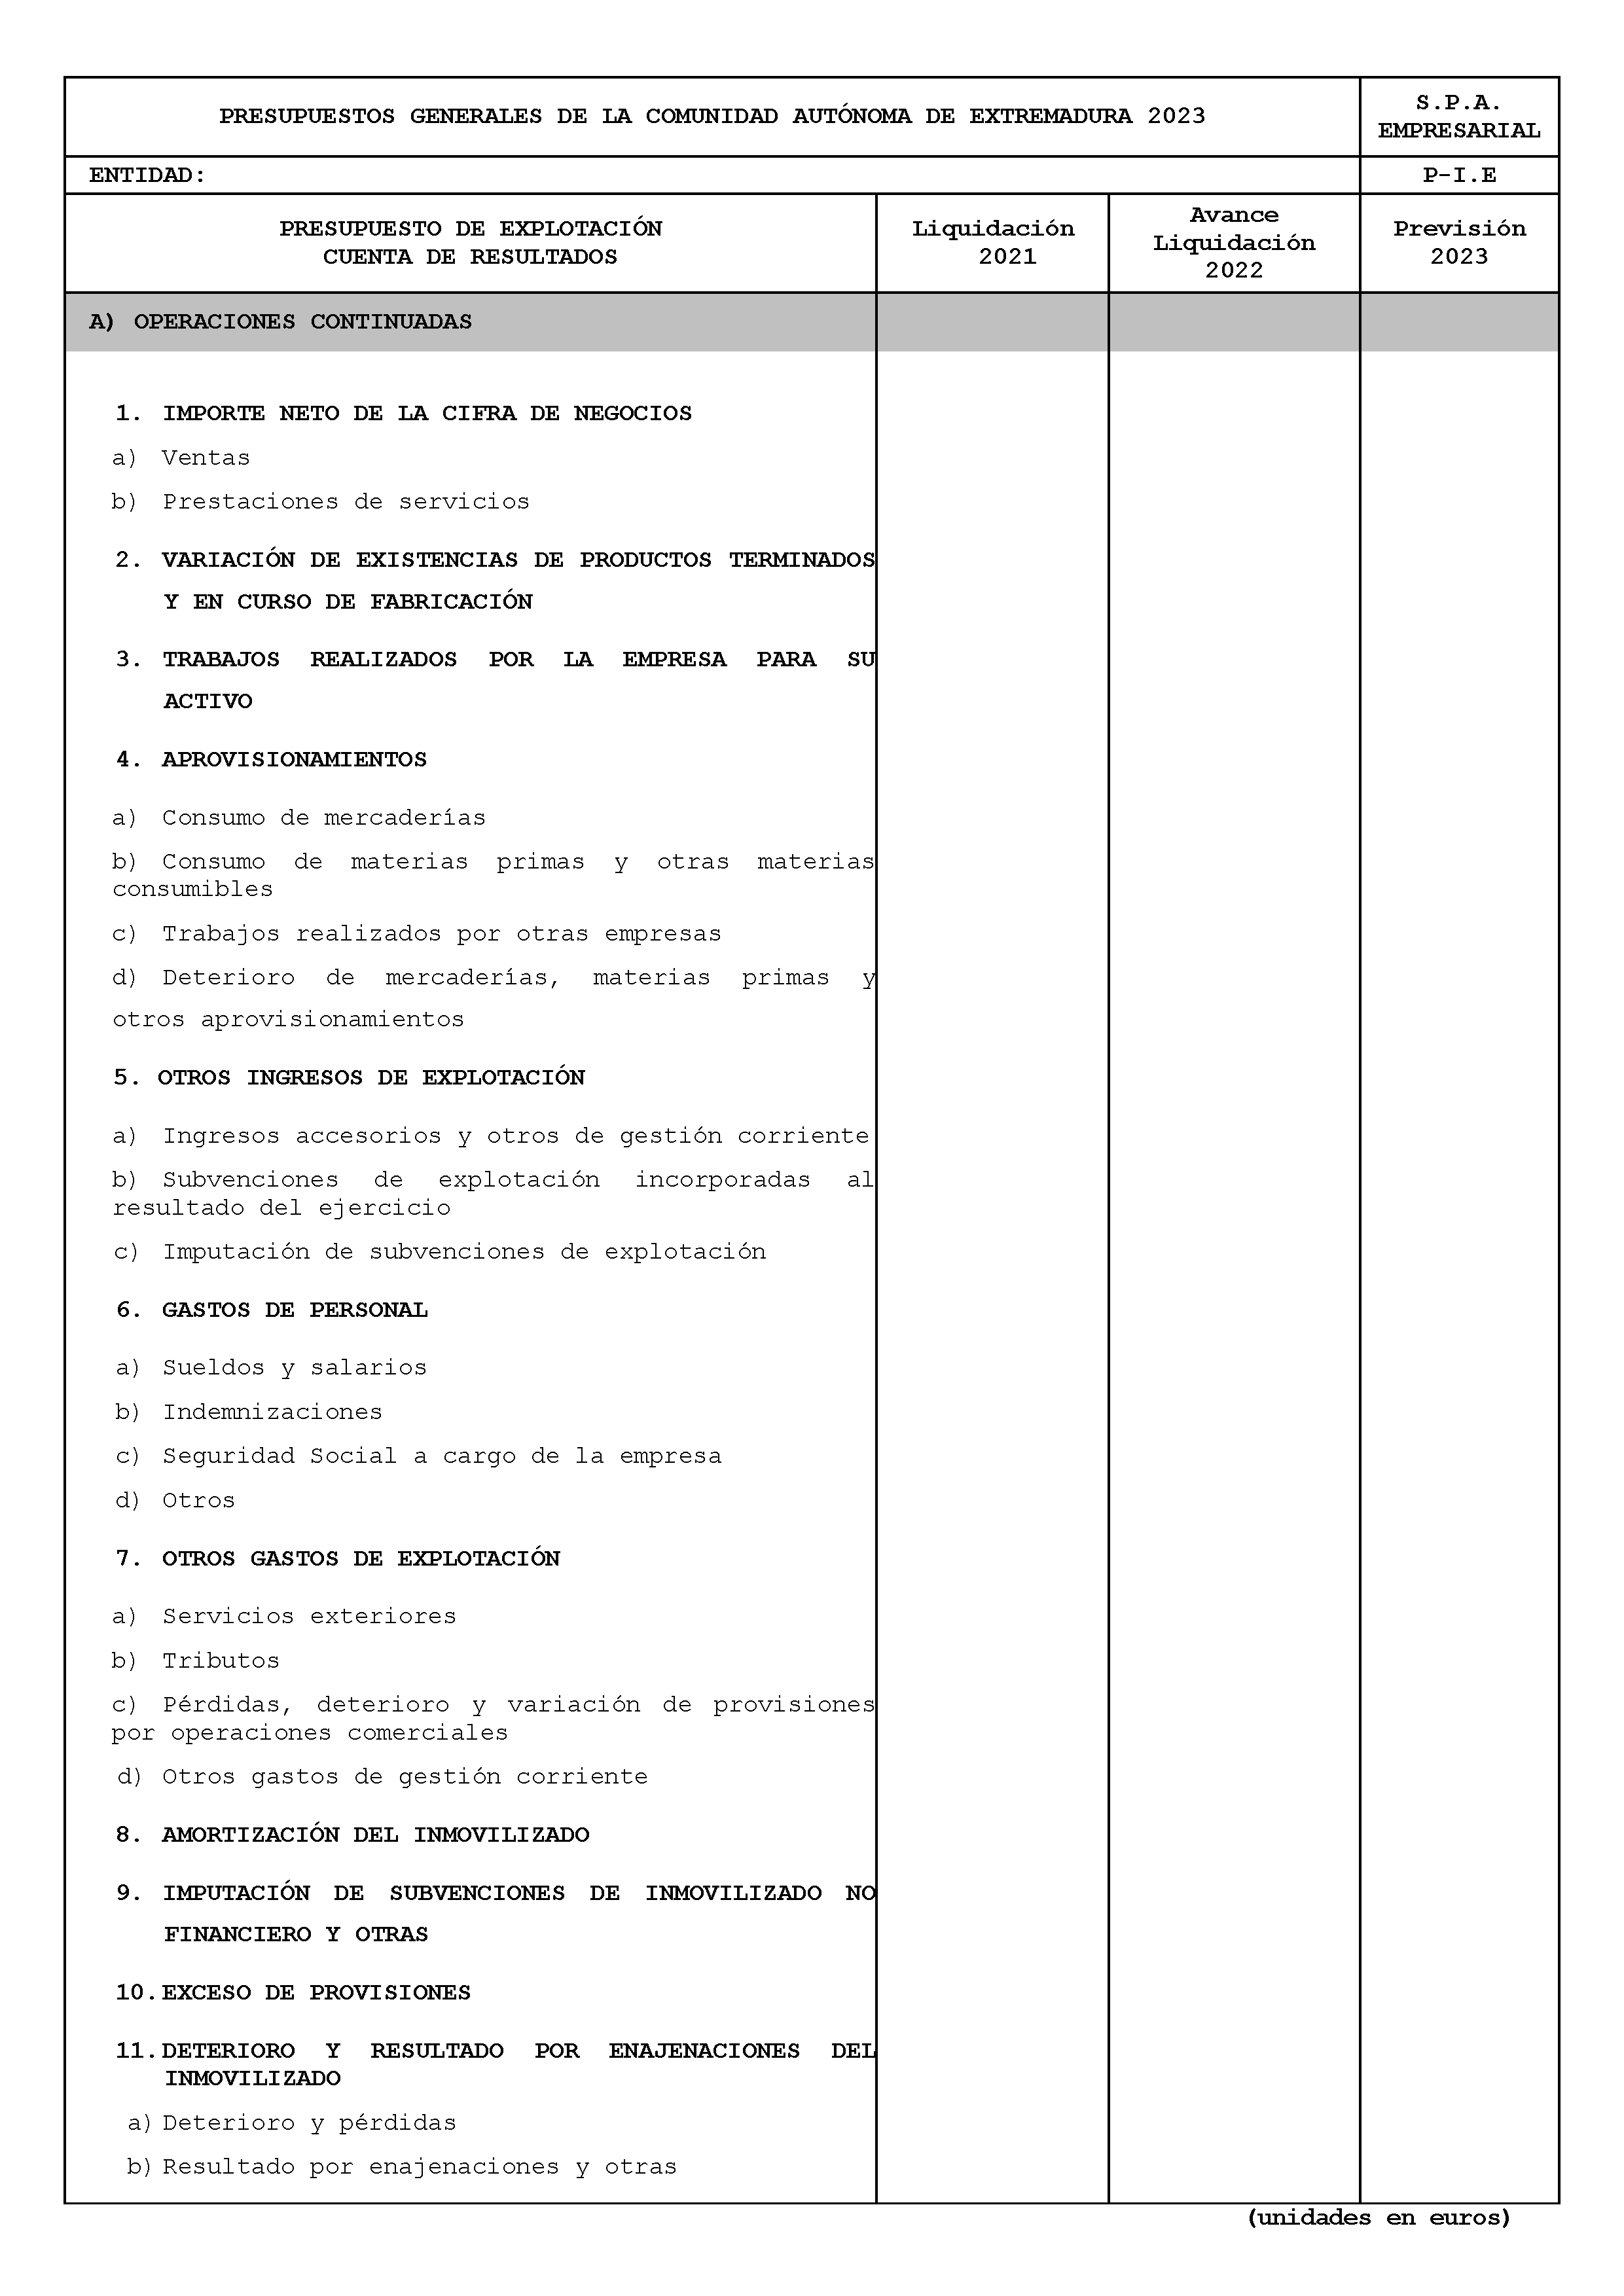 ANEXO XI FICHAS DE CUMPLIMENTACIÓN DEL SECTOR PÚBLICO AUTONÓMICO CON PRESUPUESTO ESTIMATIVO Pag 2